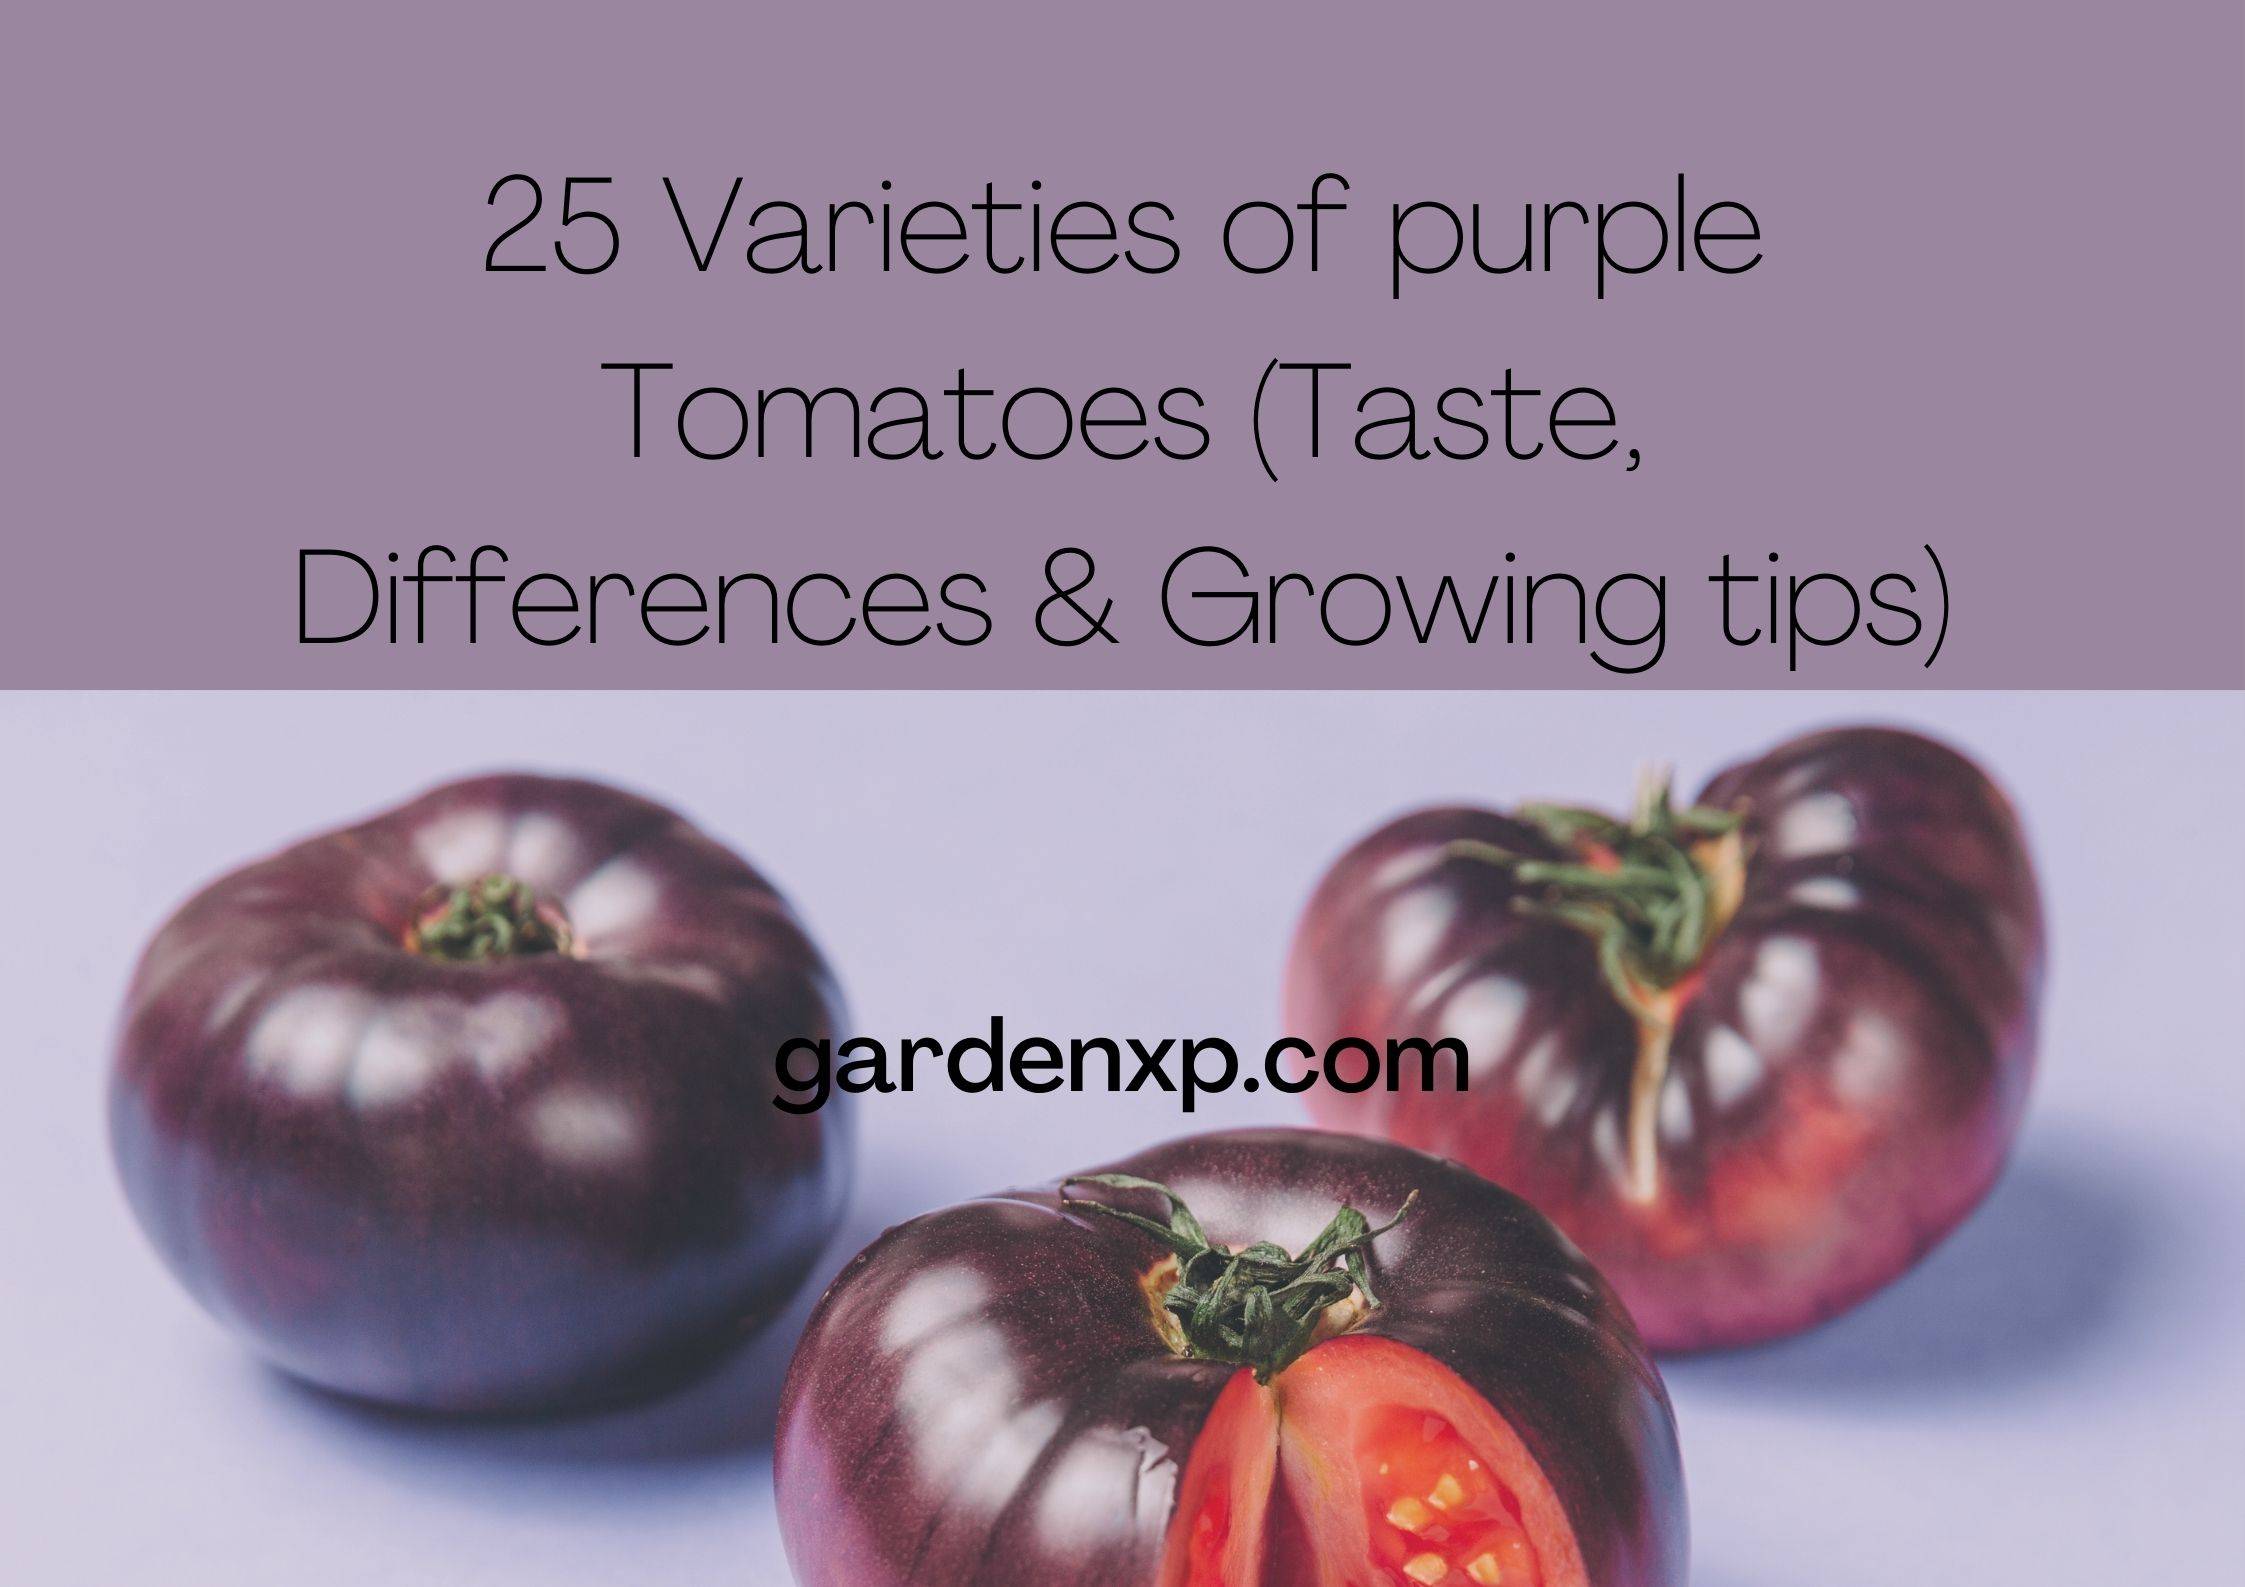 25 Varieties of purple Tomatoes (Taste, Differences & Growing tips)